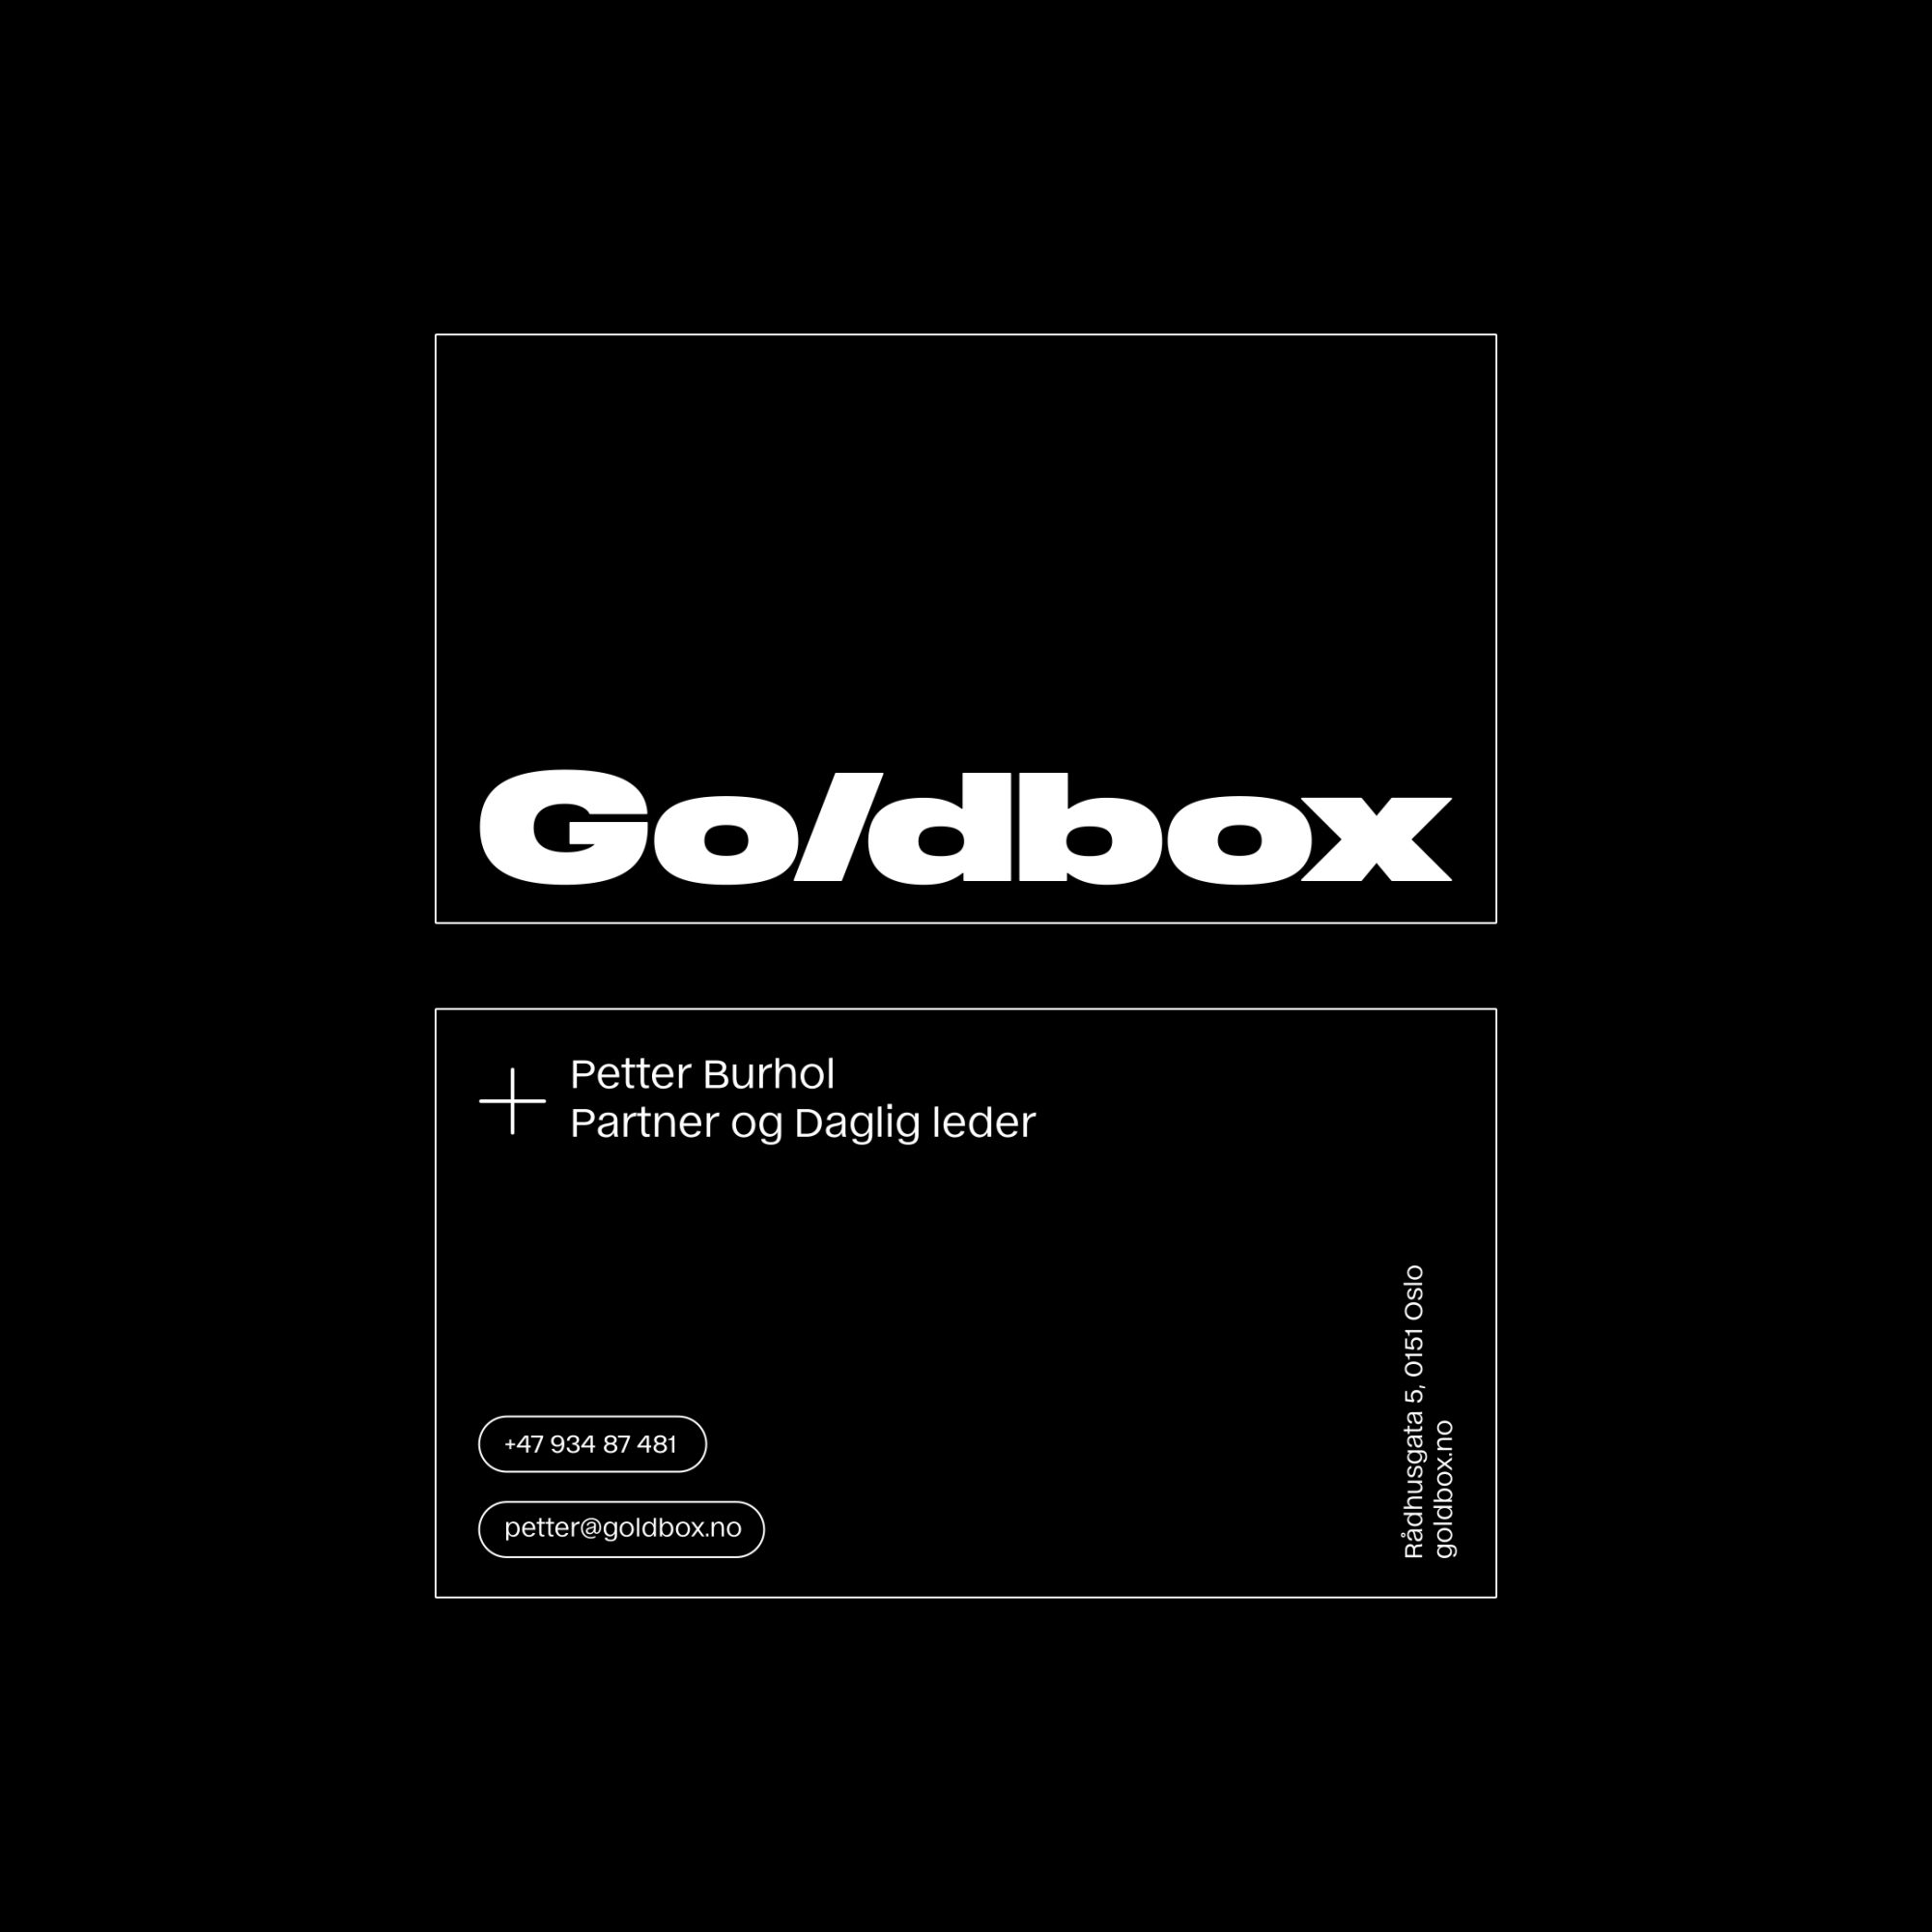 Goldbox_Bcard_1x1